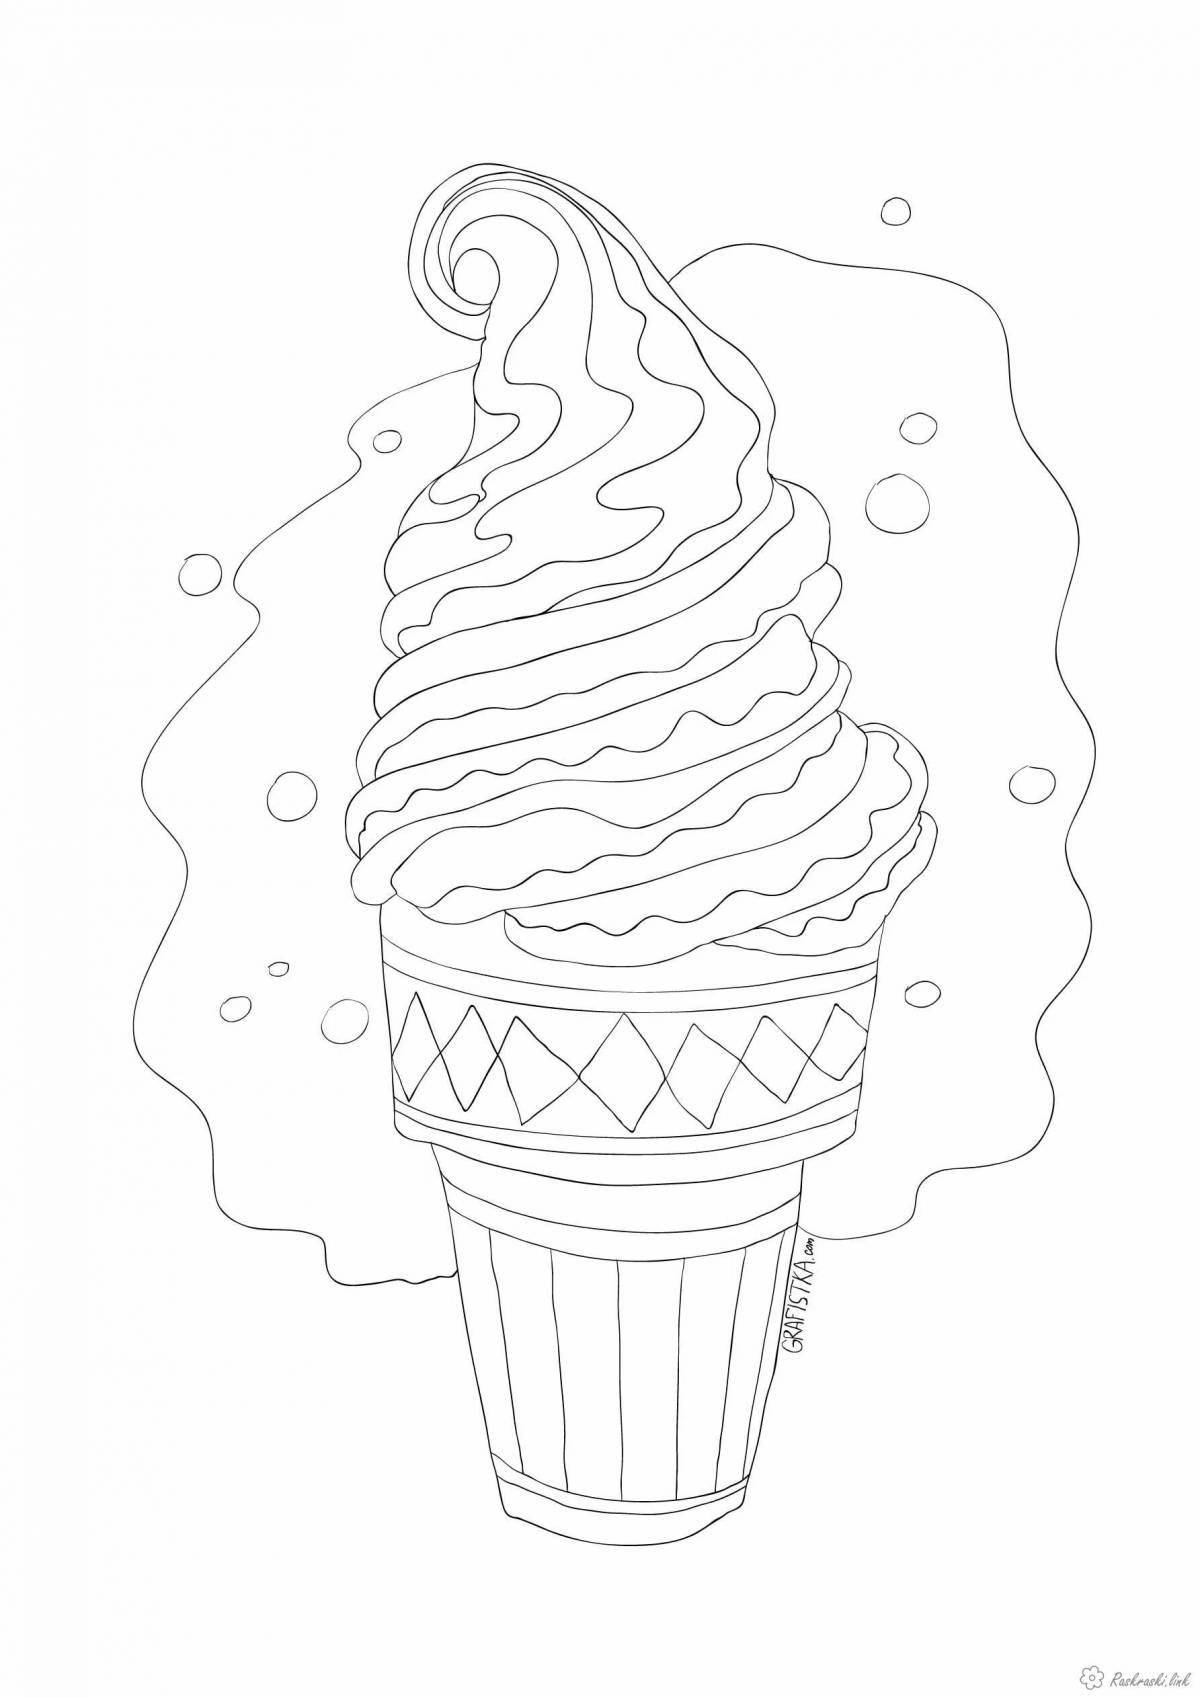 Яркая антистрессовая раскраска мороженое